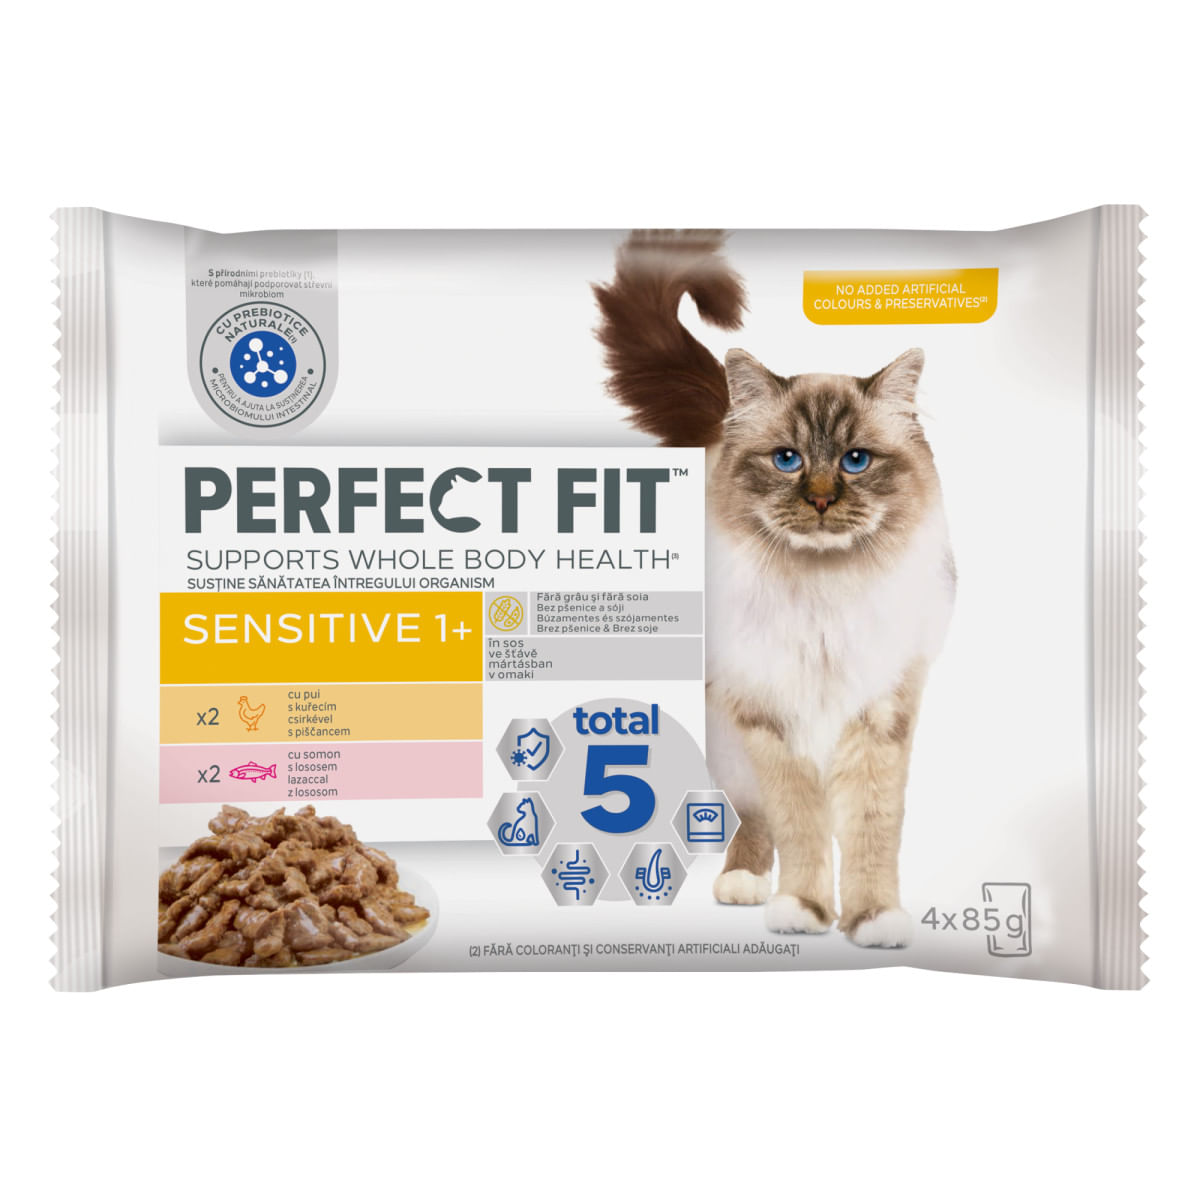 PERFECT FIT Cat Sensitive 1+ , Pui și Somon, plic hrană umedă pisici, sistem digestiv, (în sos), multipack, 85g x 4buc